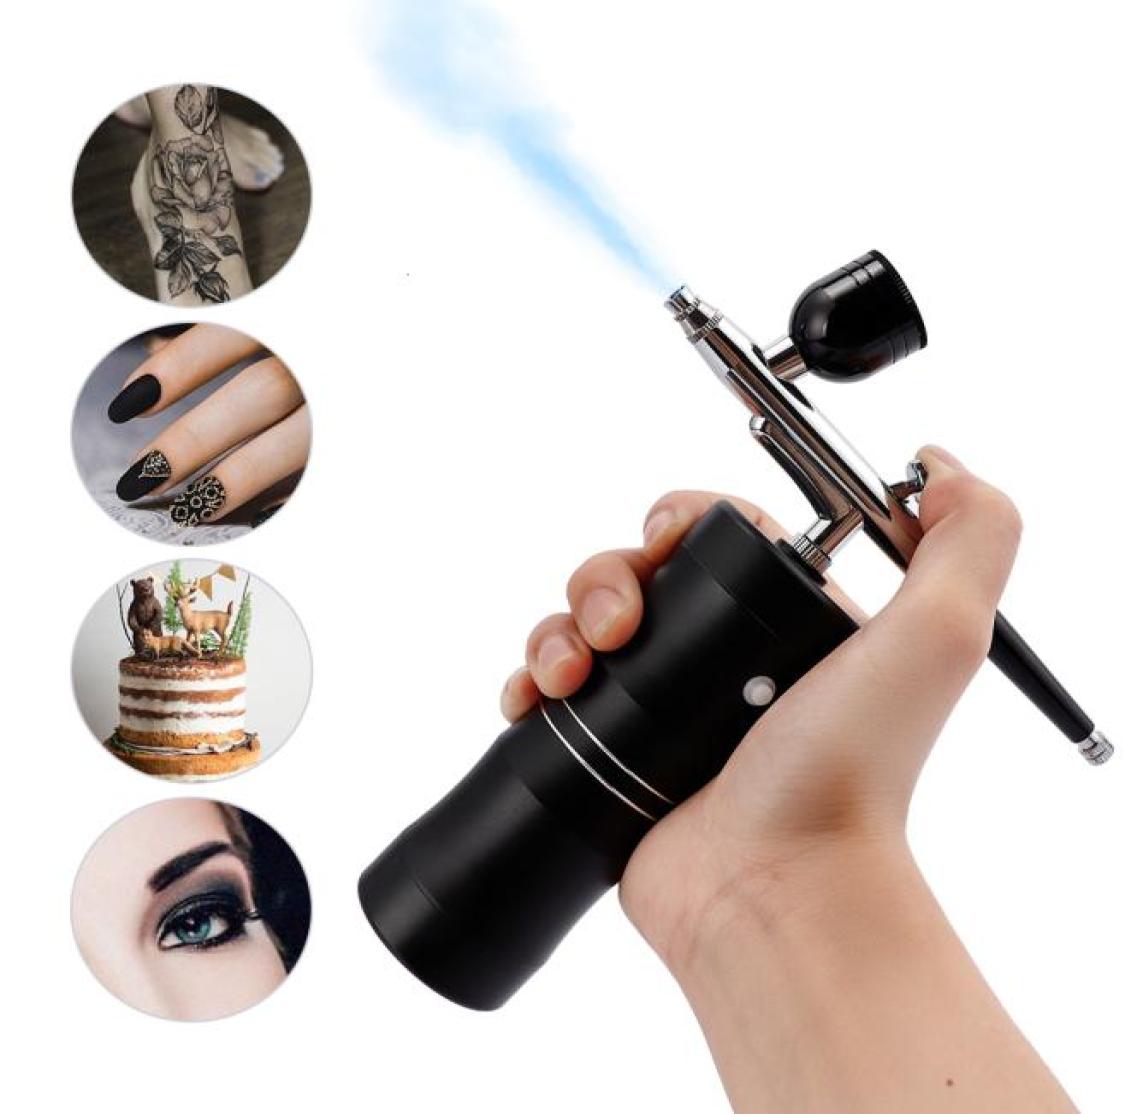 

Airbrush Tattoo Supplies Top 0 3mm Mini Air Compressor Kit Air Brush Paint Spray Gun For Nail Art Craft Cake Nano Fog Mist Sprayer2546973